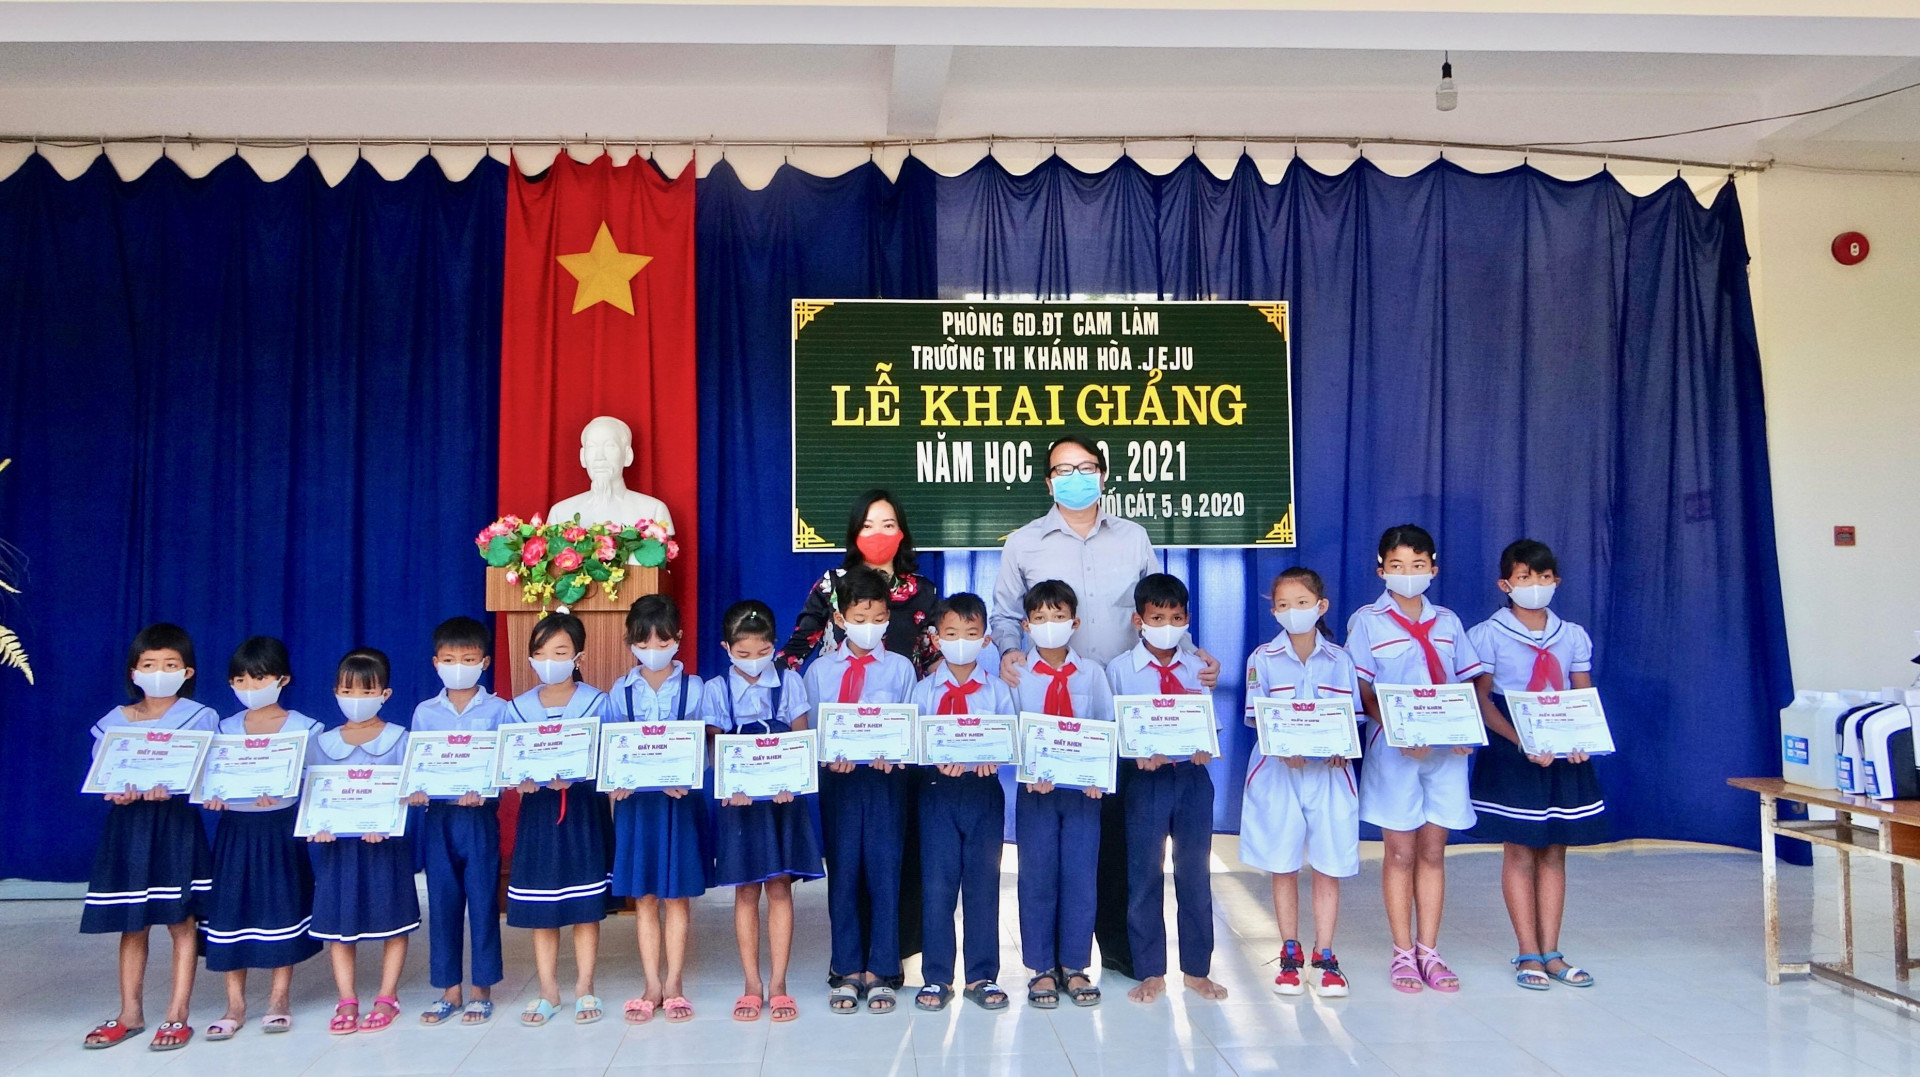 Bà Thái Thị Lệ Hằng - Phó Tổng biên tập Báo Khánh Hoà cùng đại diện Công ty TNHH Long Sinh trao học bổng cho 15 em học sinh có hoàn cảnh khó khăn